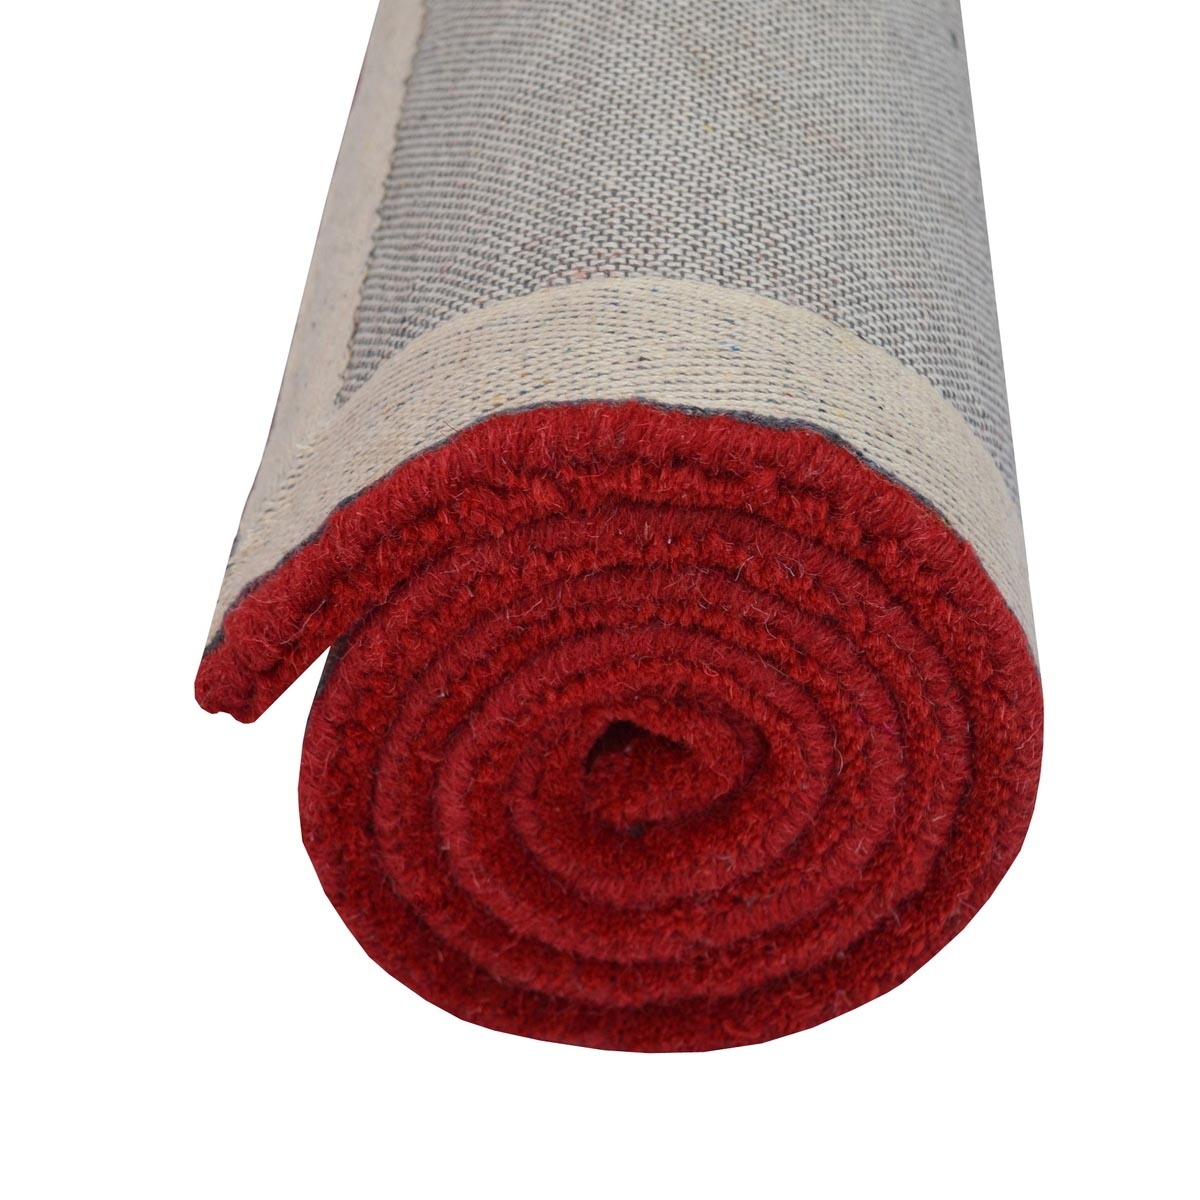 Rose Avolon Red Runner | Wool Rugs Belrose | Rugs N Timber